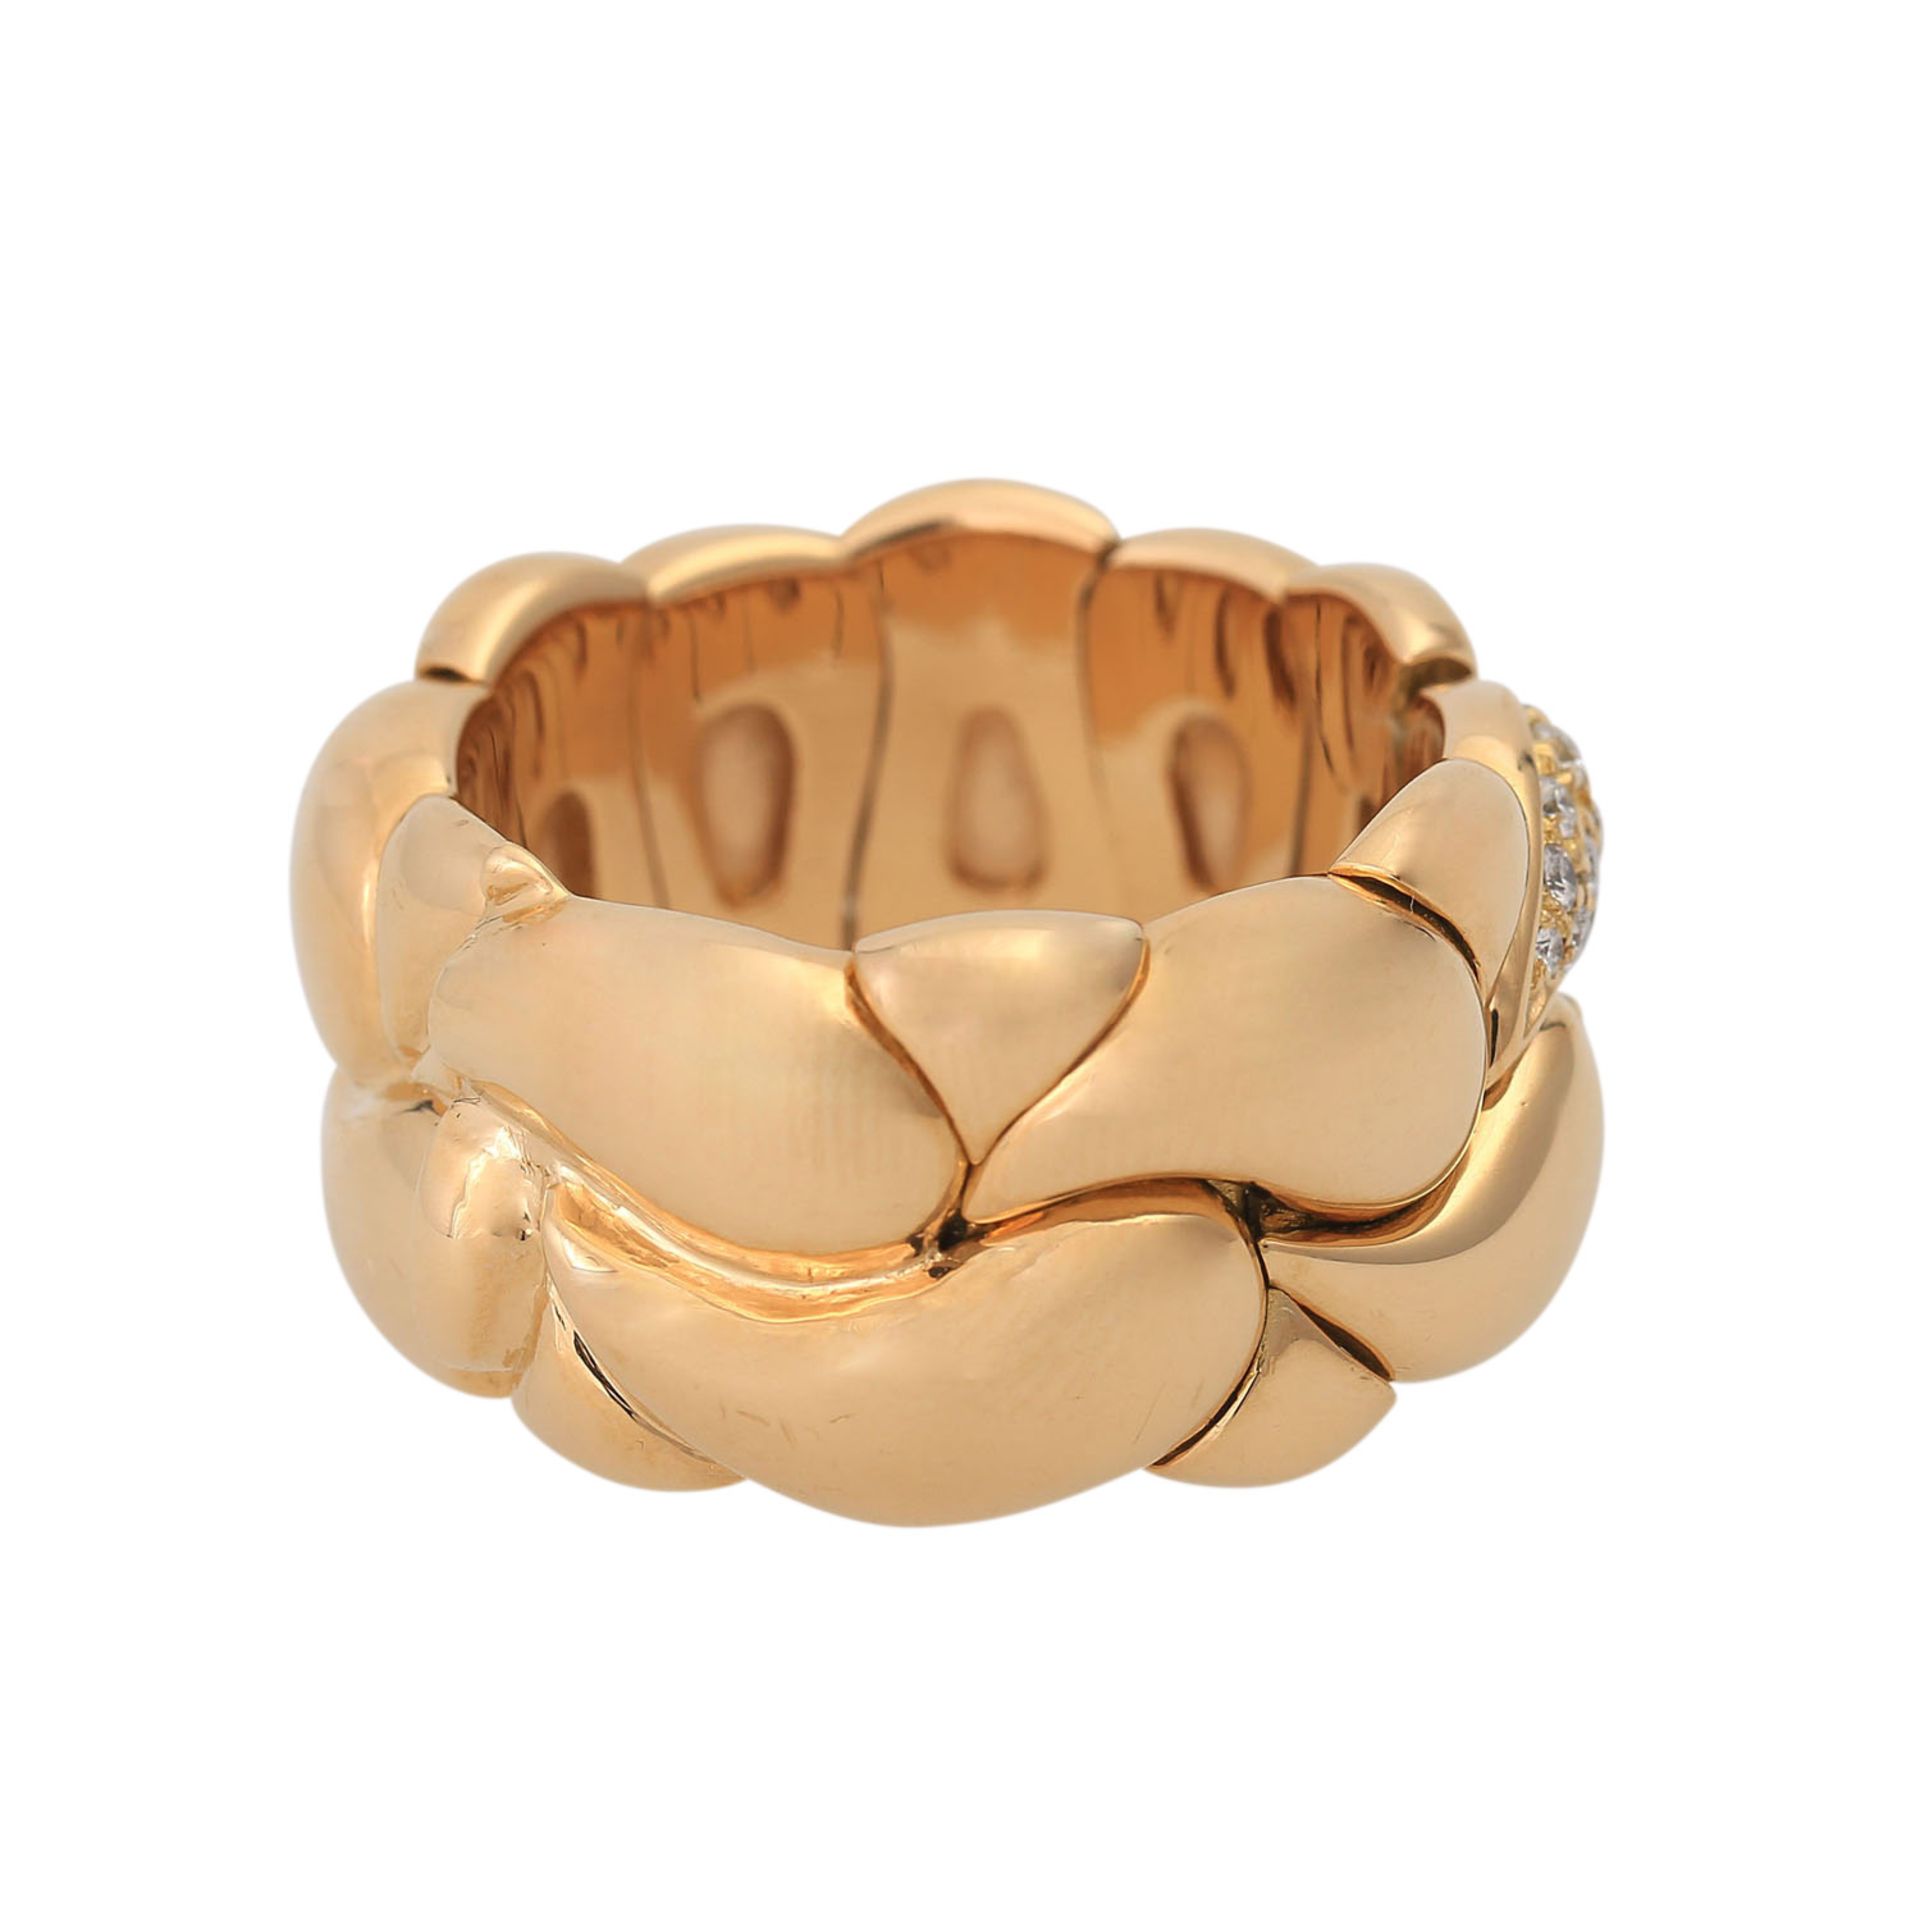 CHOPARD Ring "Casmir" mit Brillantbesatz,GG, NP ca. 8.000 €, RW: 62, nummeriert 2286703. Offene - Bild 3 aus 6